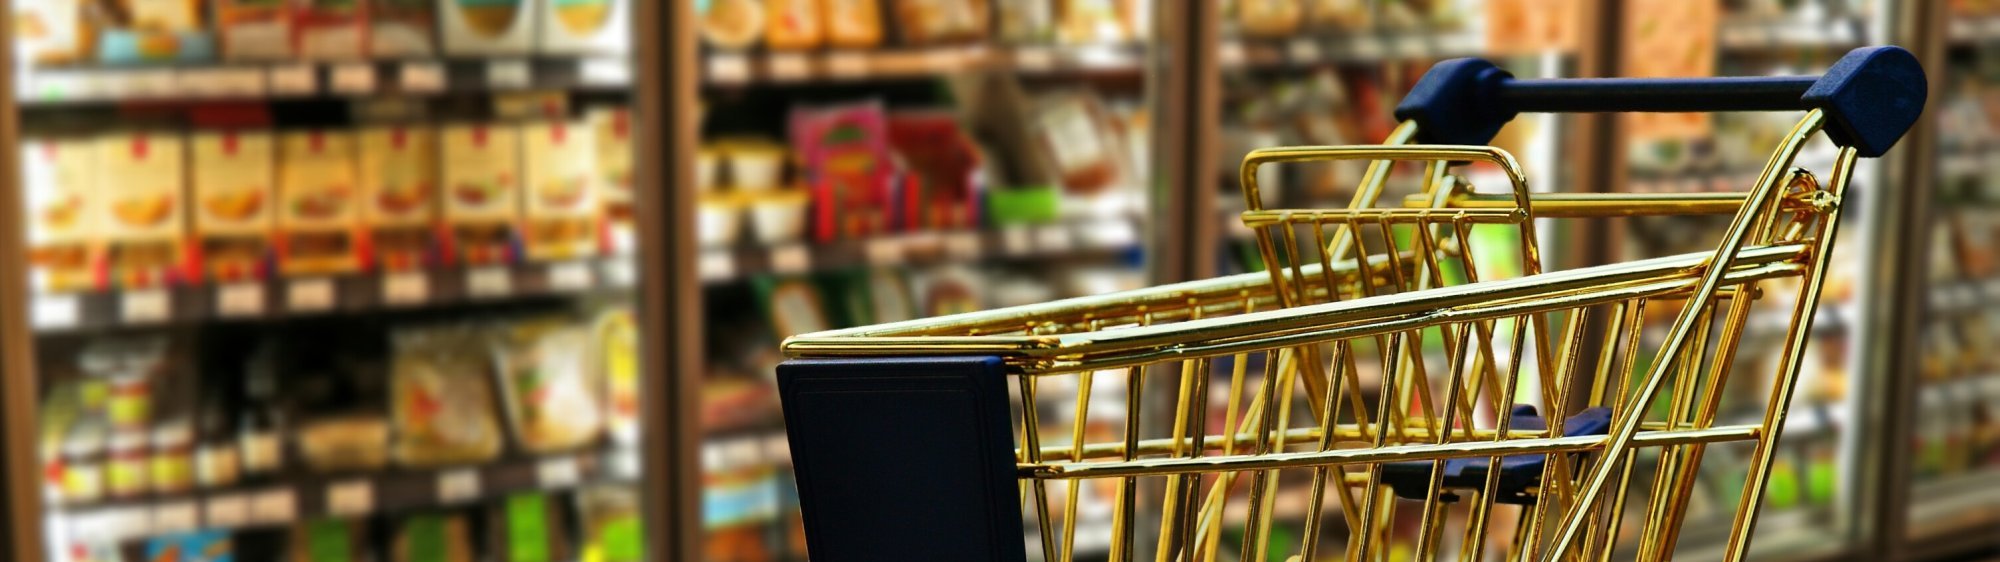 Supermercado Sonia Ii Brindando Calidad Y Economia